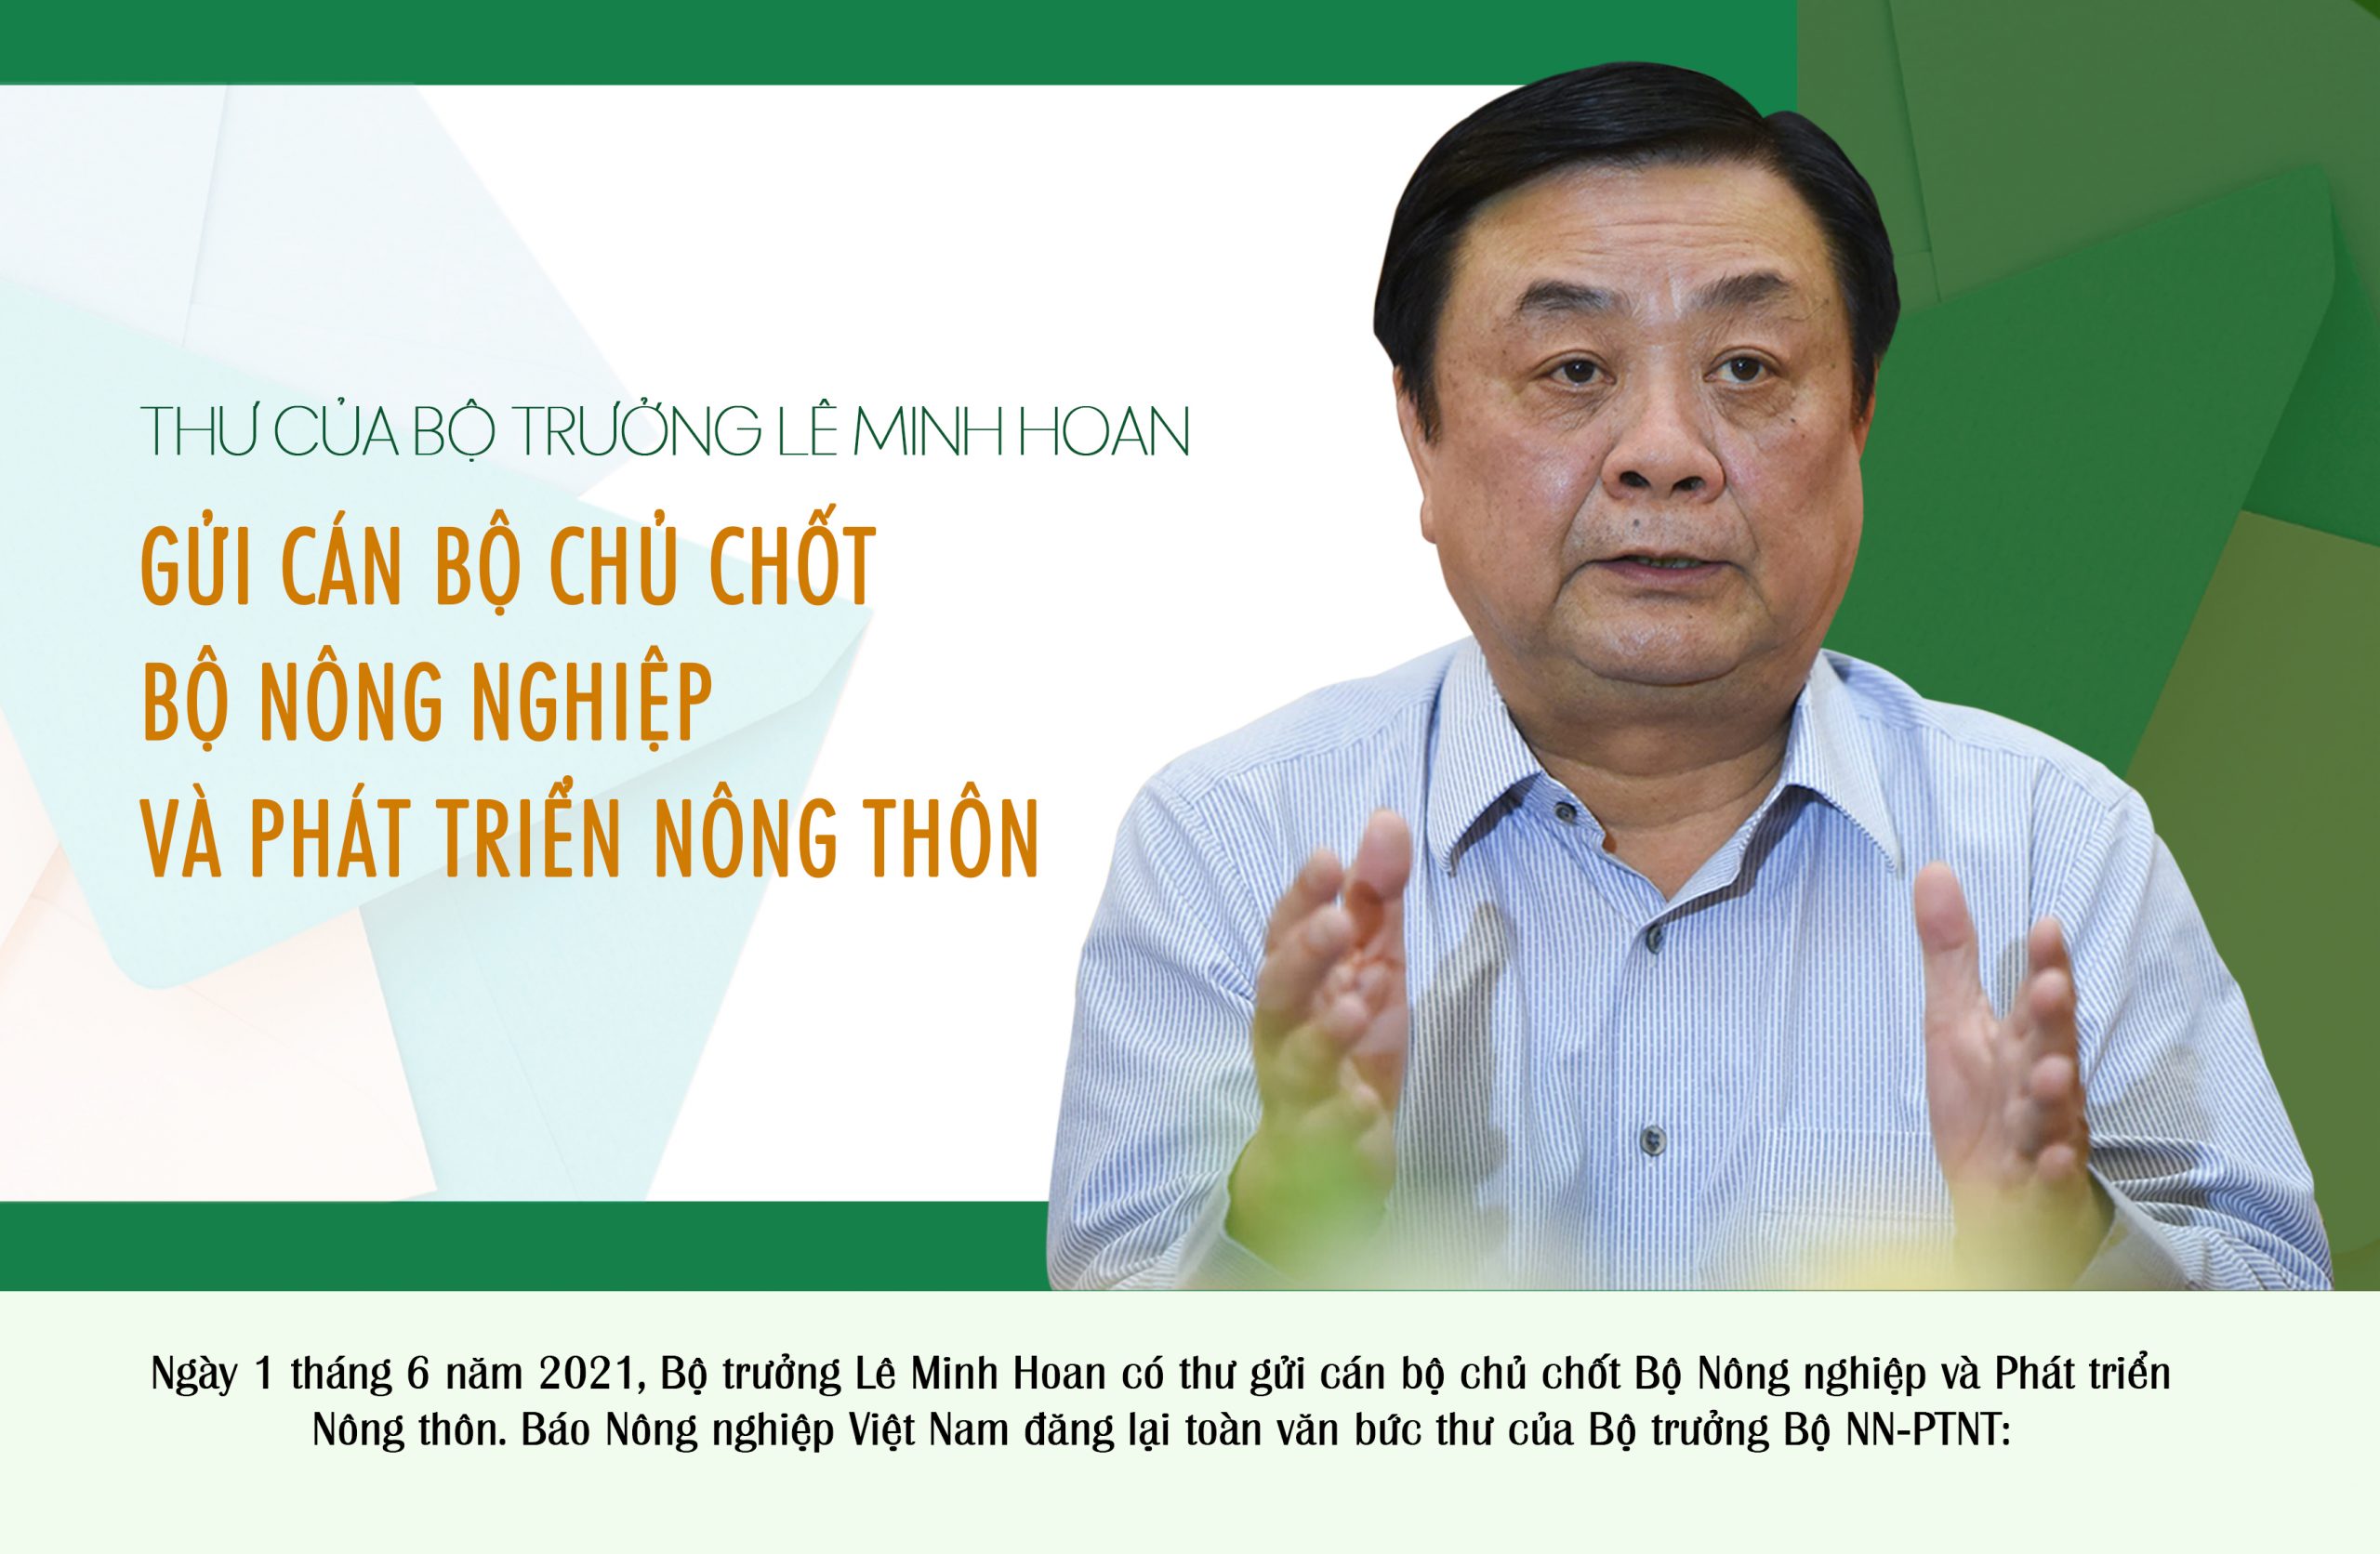 Thư của Bộ trưởng Lê Minh Hoan gửi cán bộ chủ chốt Bộ Nông nghiệp và Phát triển nông thôn